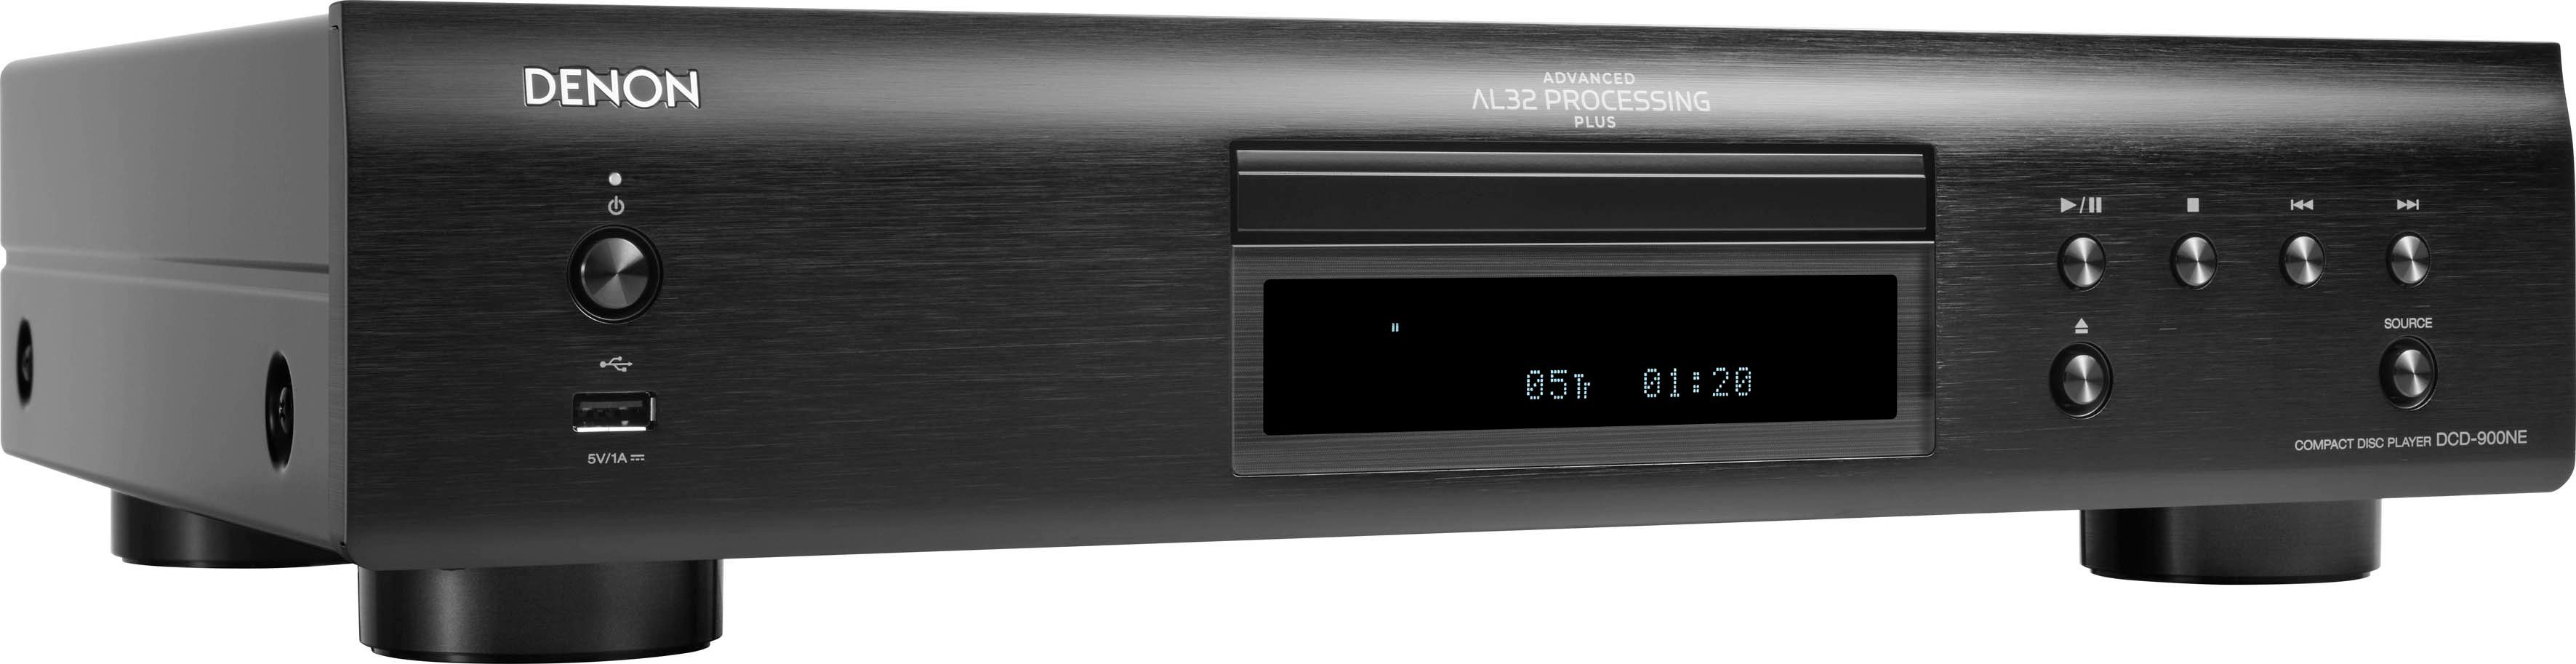 DCD-900NE (USB-Audiowiedergabe) CD-Player schwarz Denon